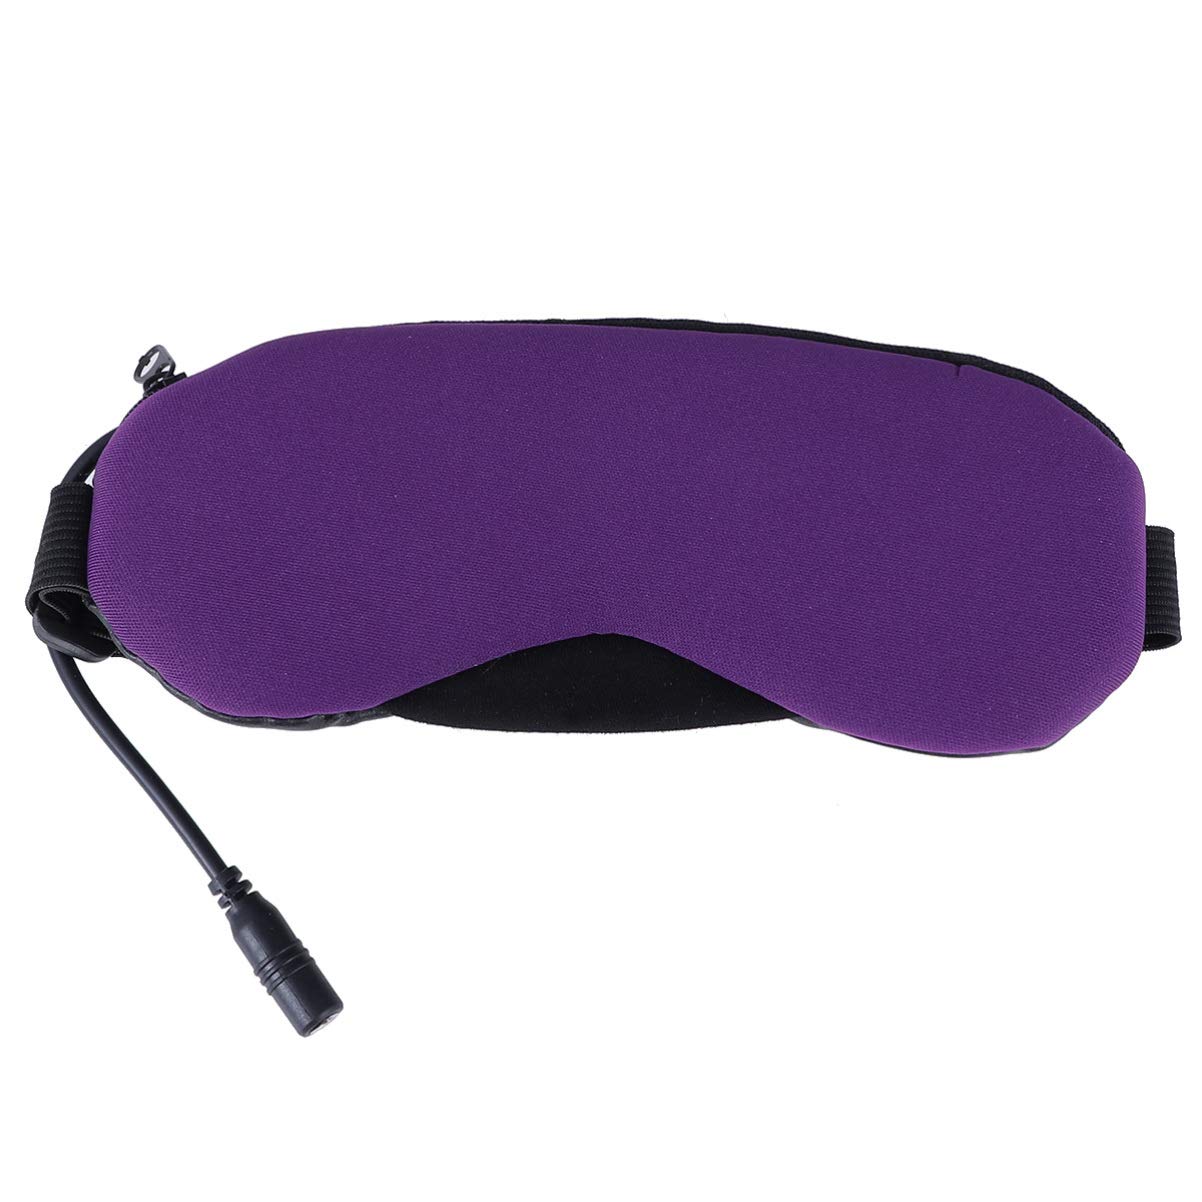 Heallily Augenmaske USB Dampf Augenmaske Wärmemaske Soft Adjustable Augenmaske Lindert Stress Augen Therapeutische Behandlung für trockene Augen, Blepharitis, Stile (grau, kein Duft)